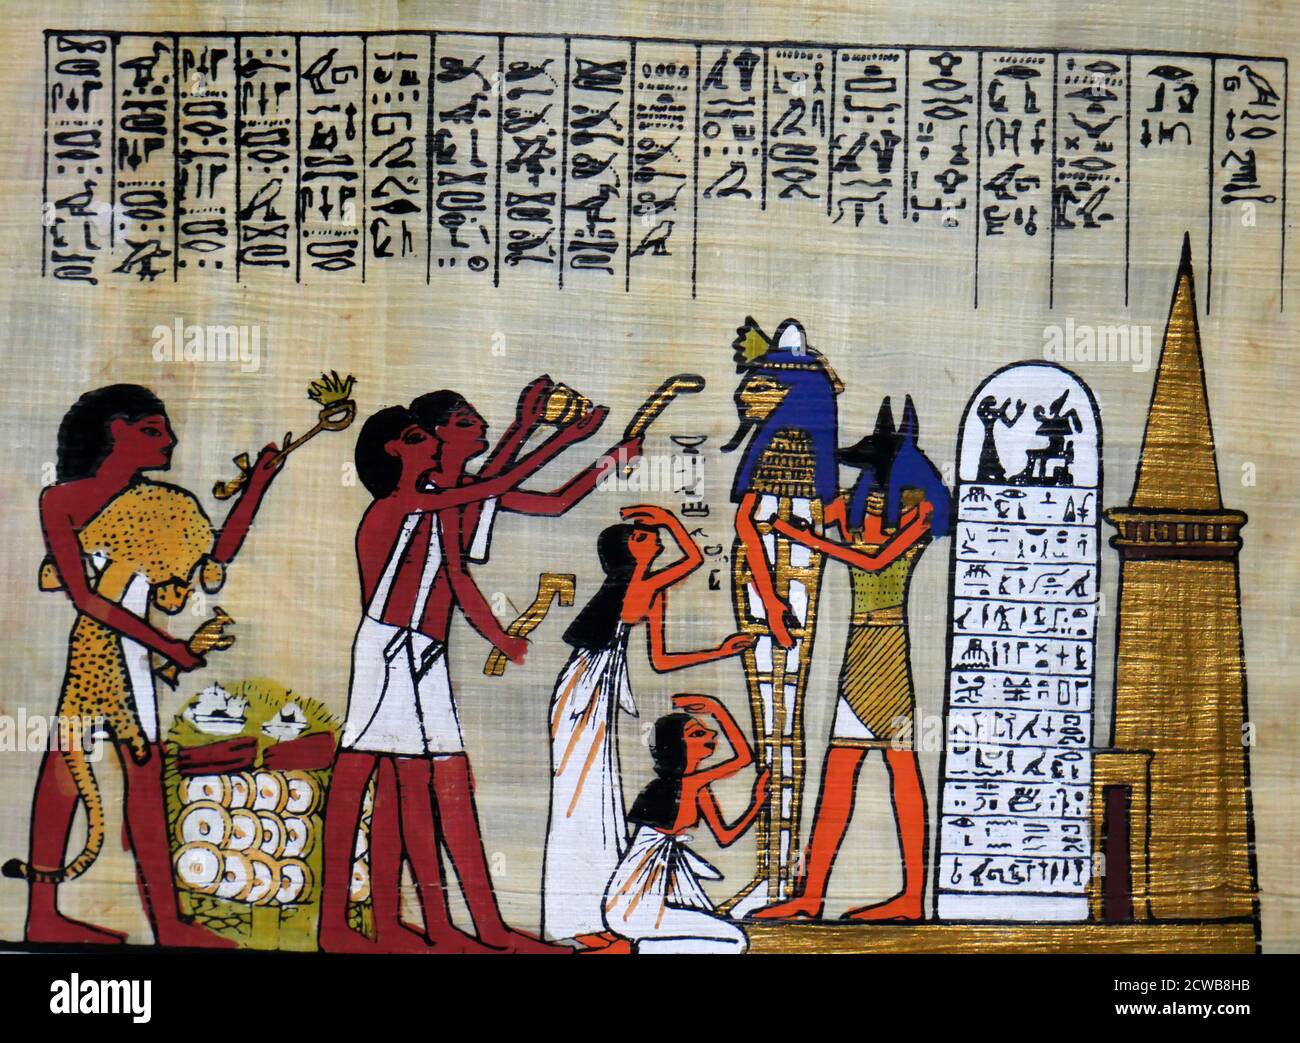 Zeitgenössische Papyrus Darstellung der alten ägyptischen Mumifizierung Ritual für einen pharao. Anubis hält den Sarg, während die Begleiter Opfergaben machen Stockfoto